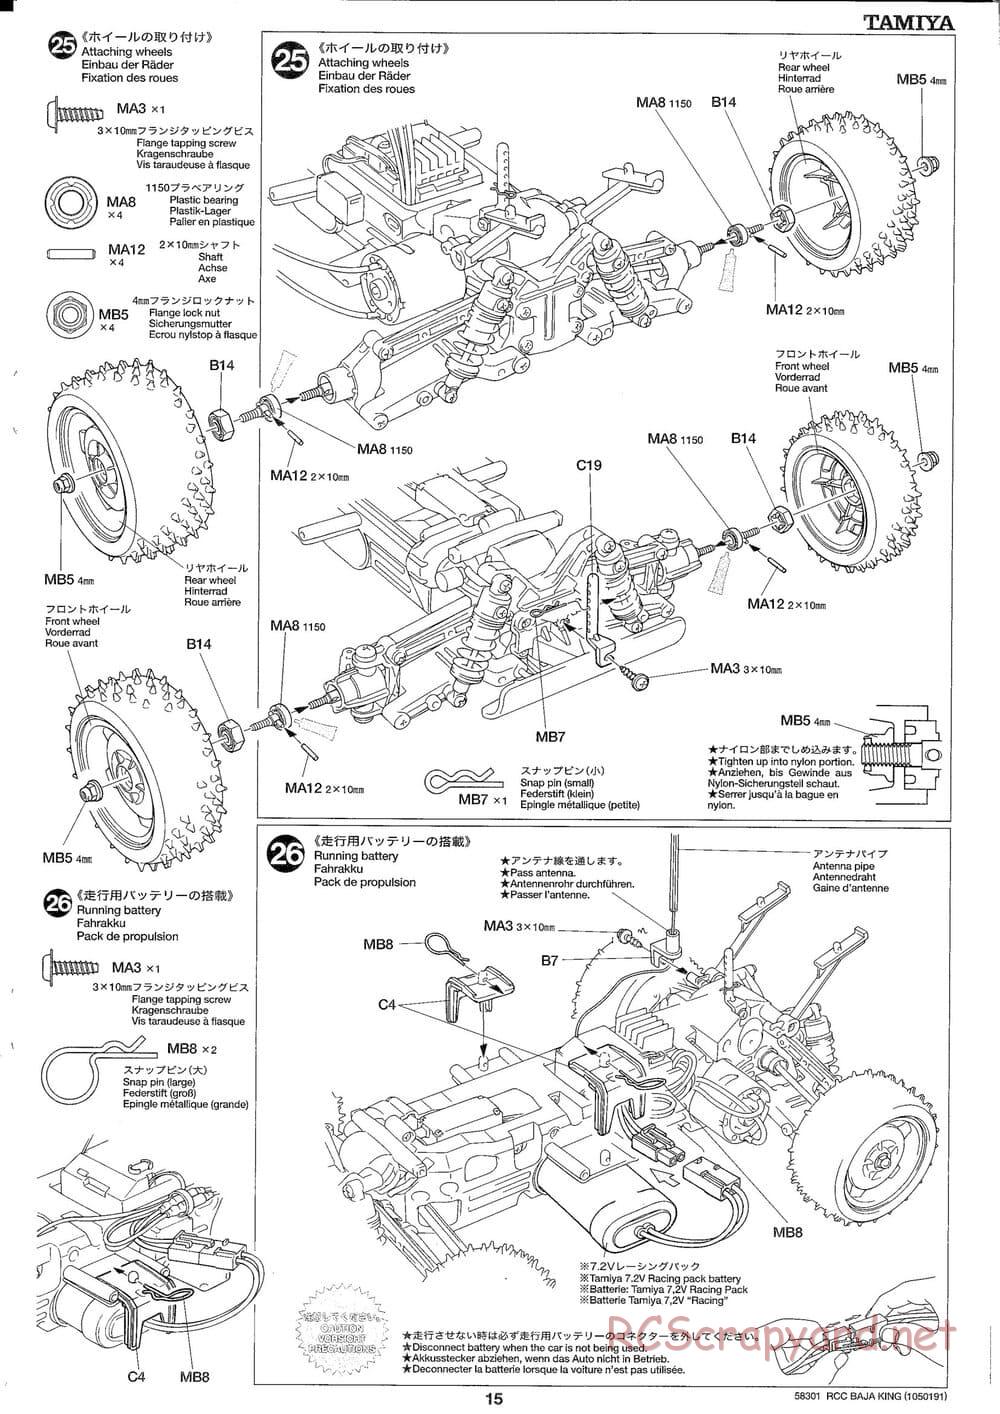 Tamiya - Baja King - TL-01B Chassis - Manual - Page 15